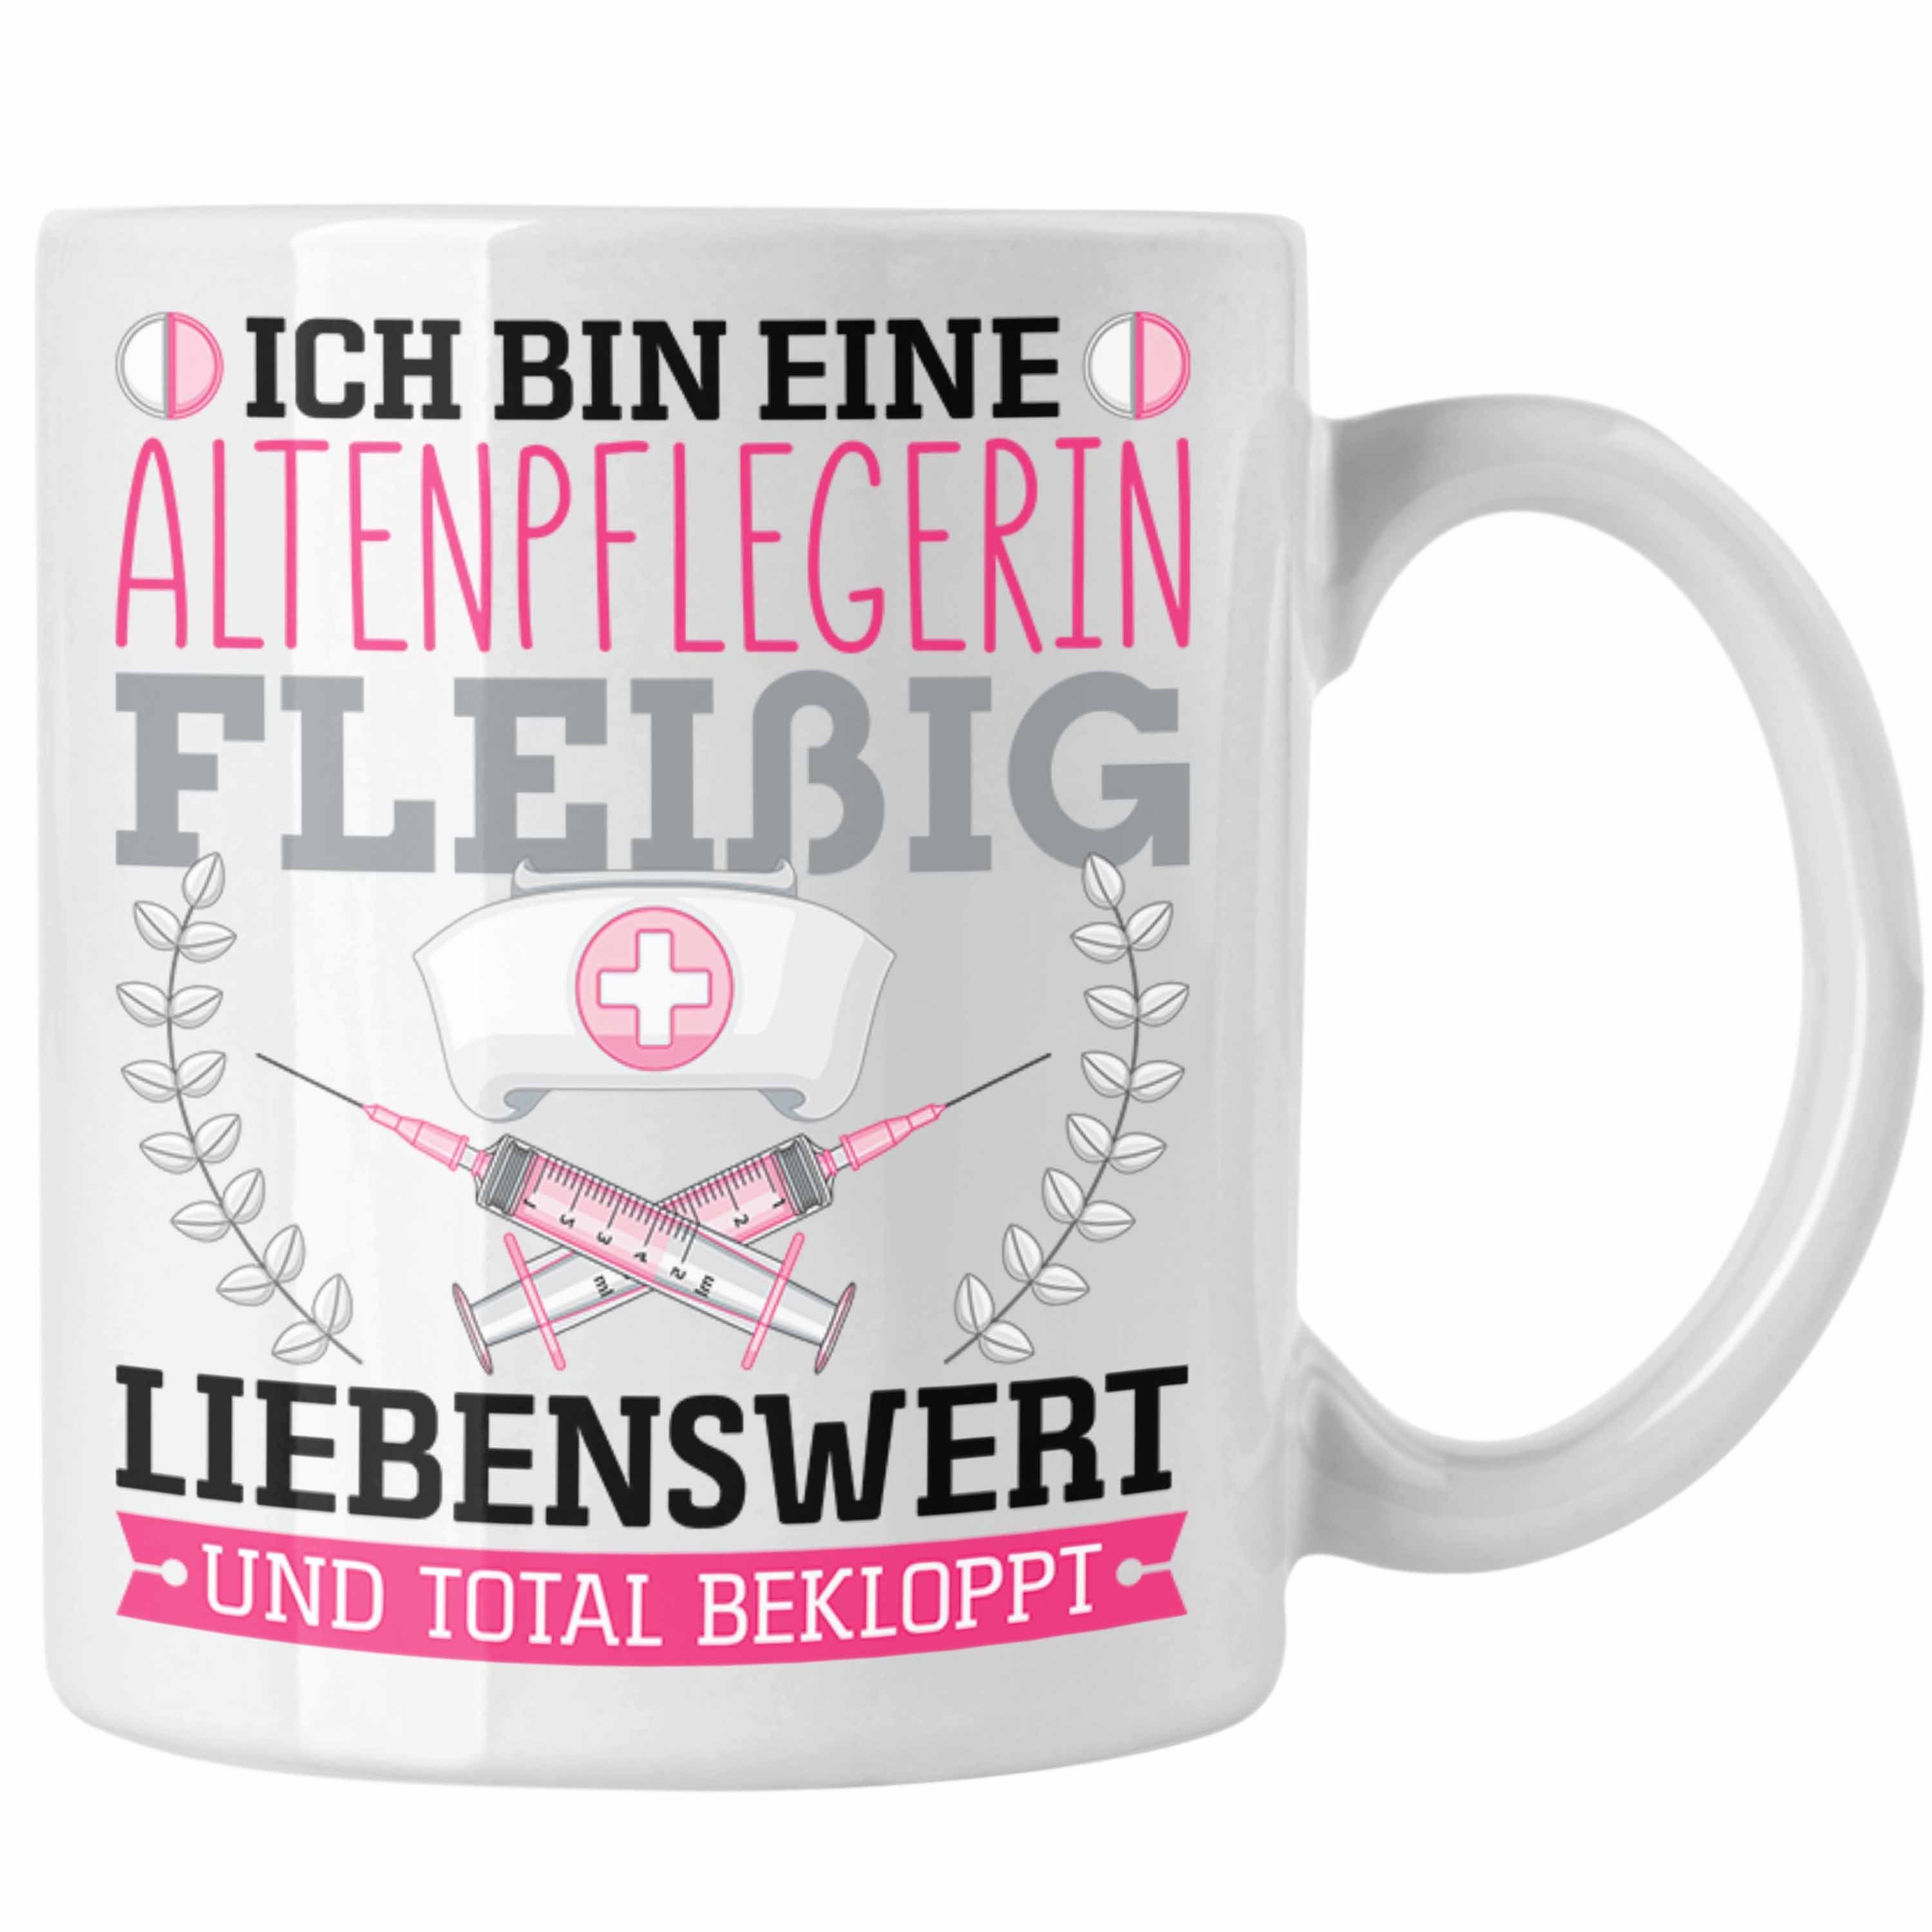 Trendation Tasse Altenpflegerin Fleißig Bekloppt Tasse Geschenk Altenpfleger Frauen Ges Weiss